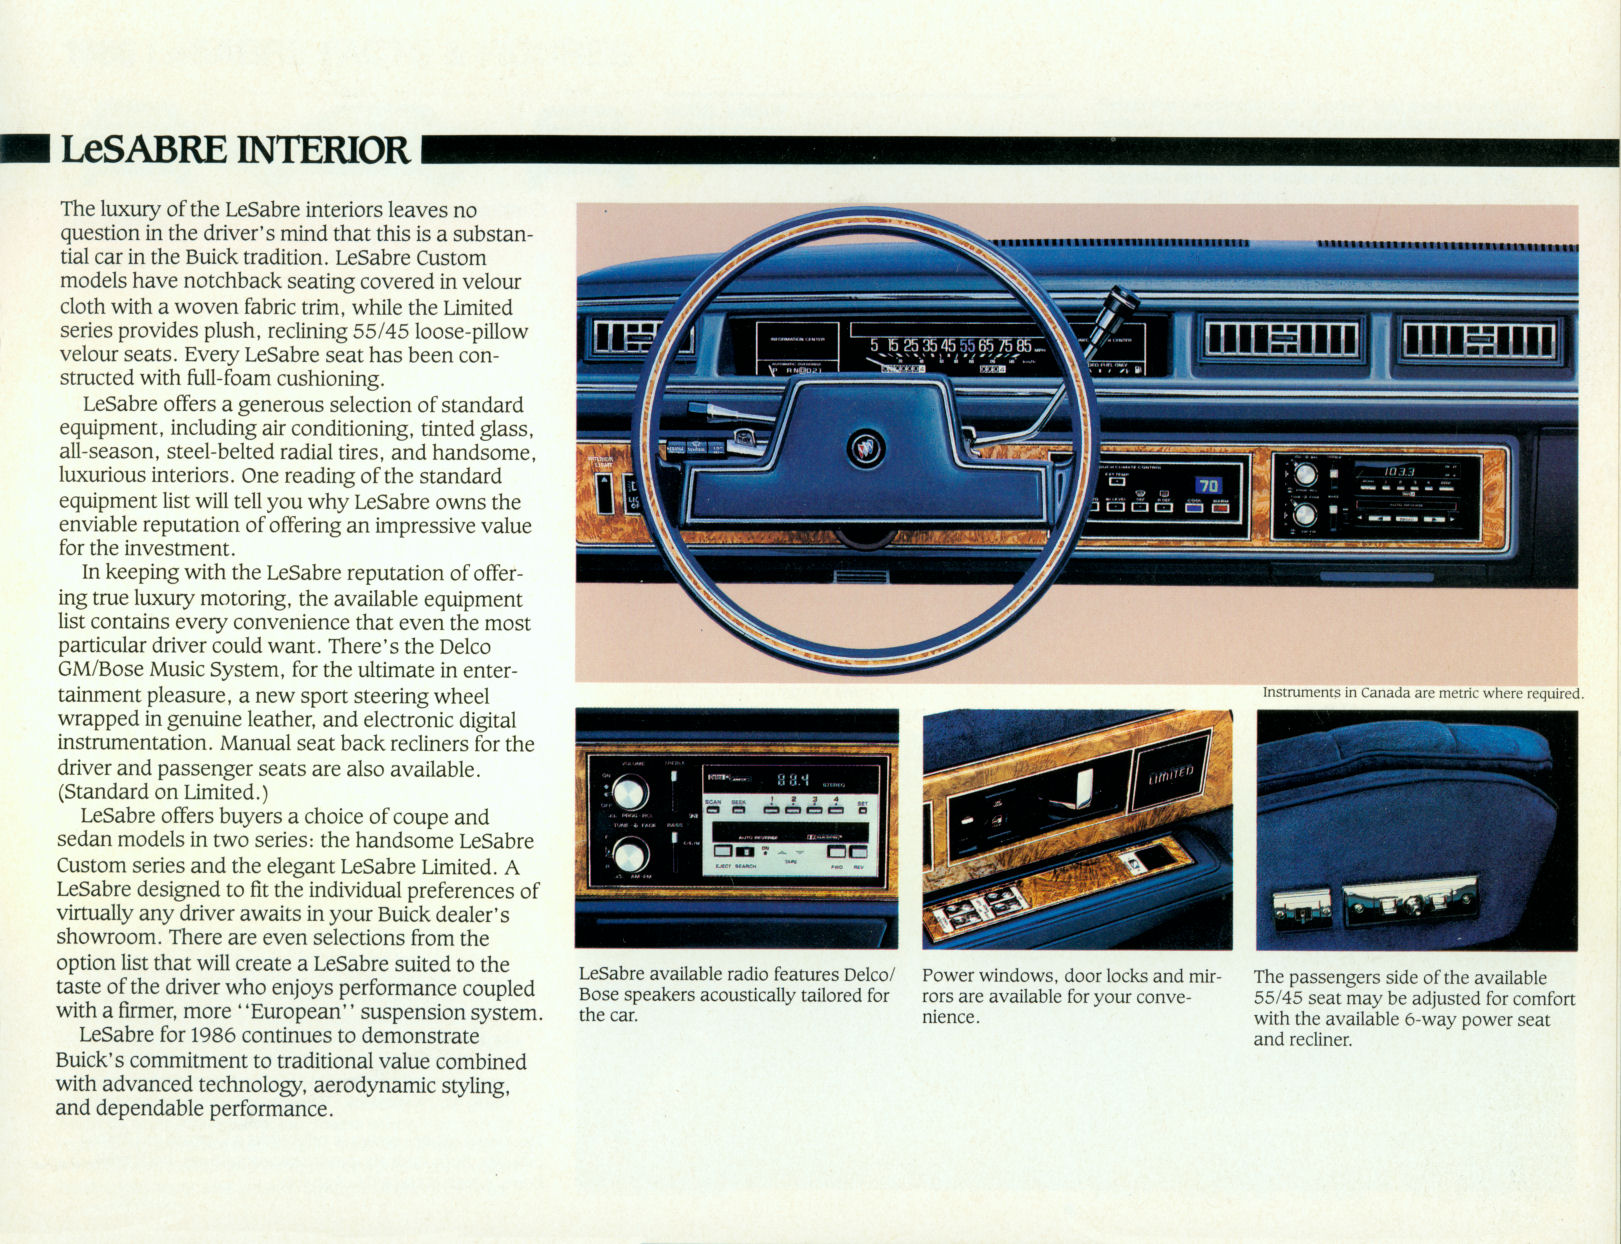 1986 Buick LeSabre-Cdn-05